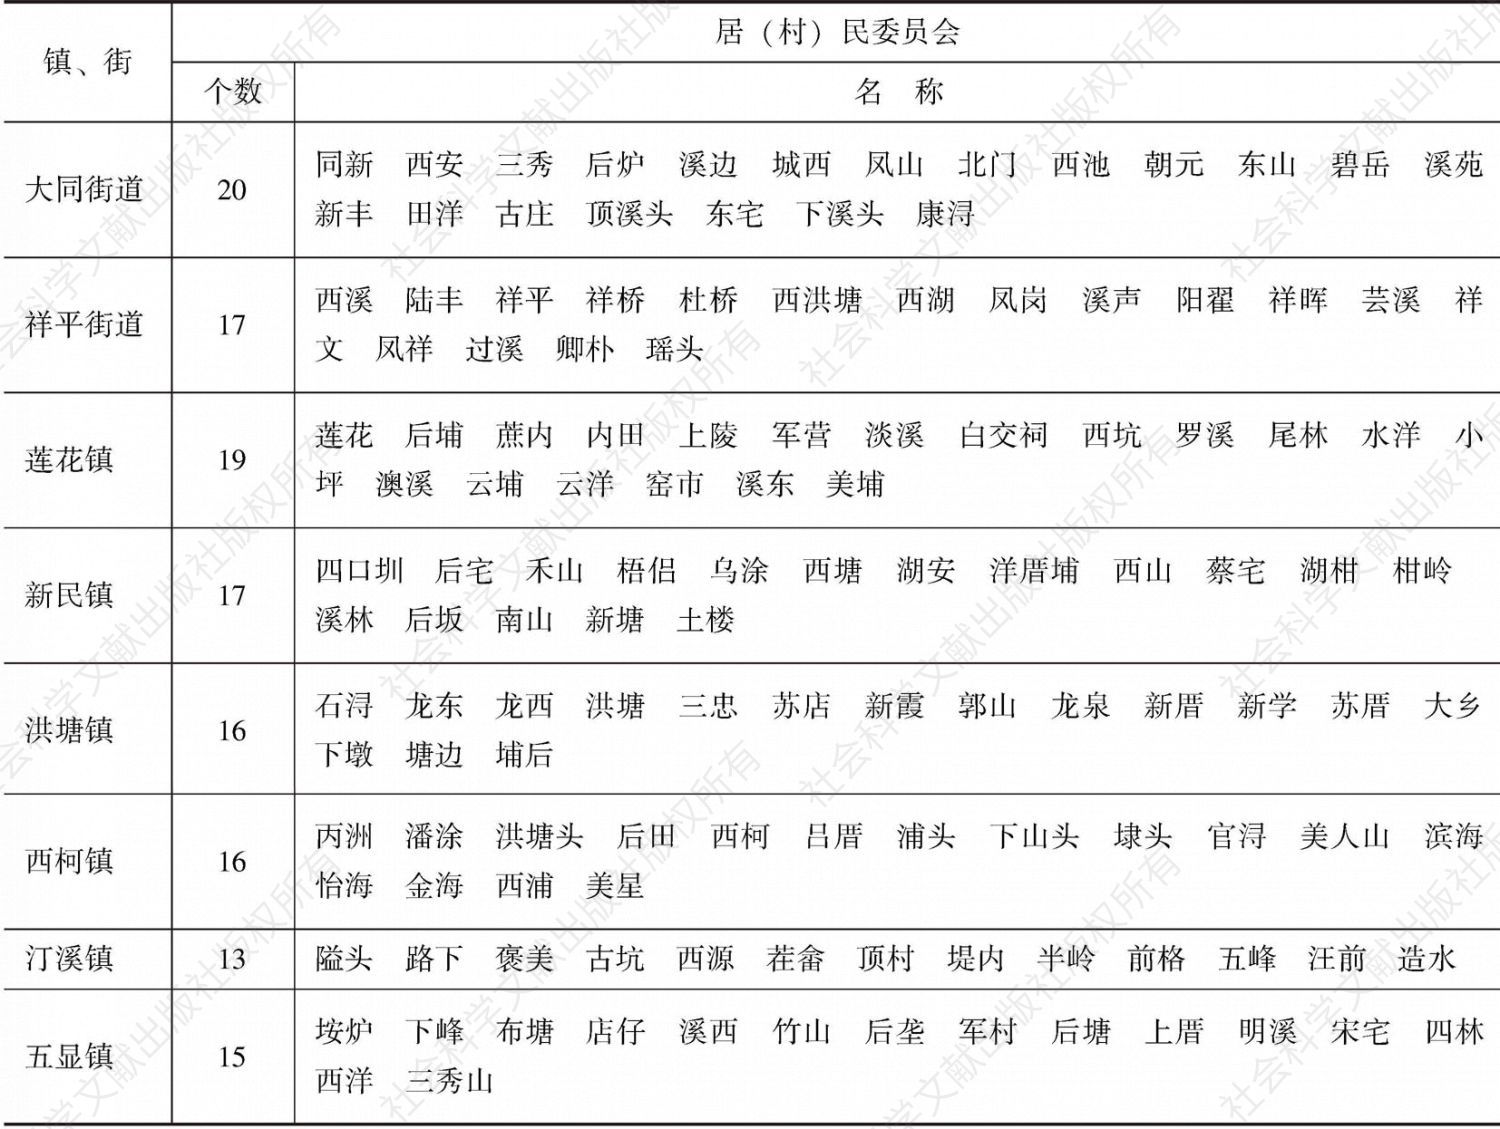 表2-5 2015年12月同安区行政区划表